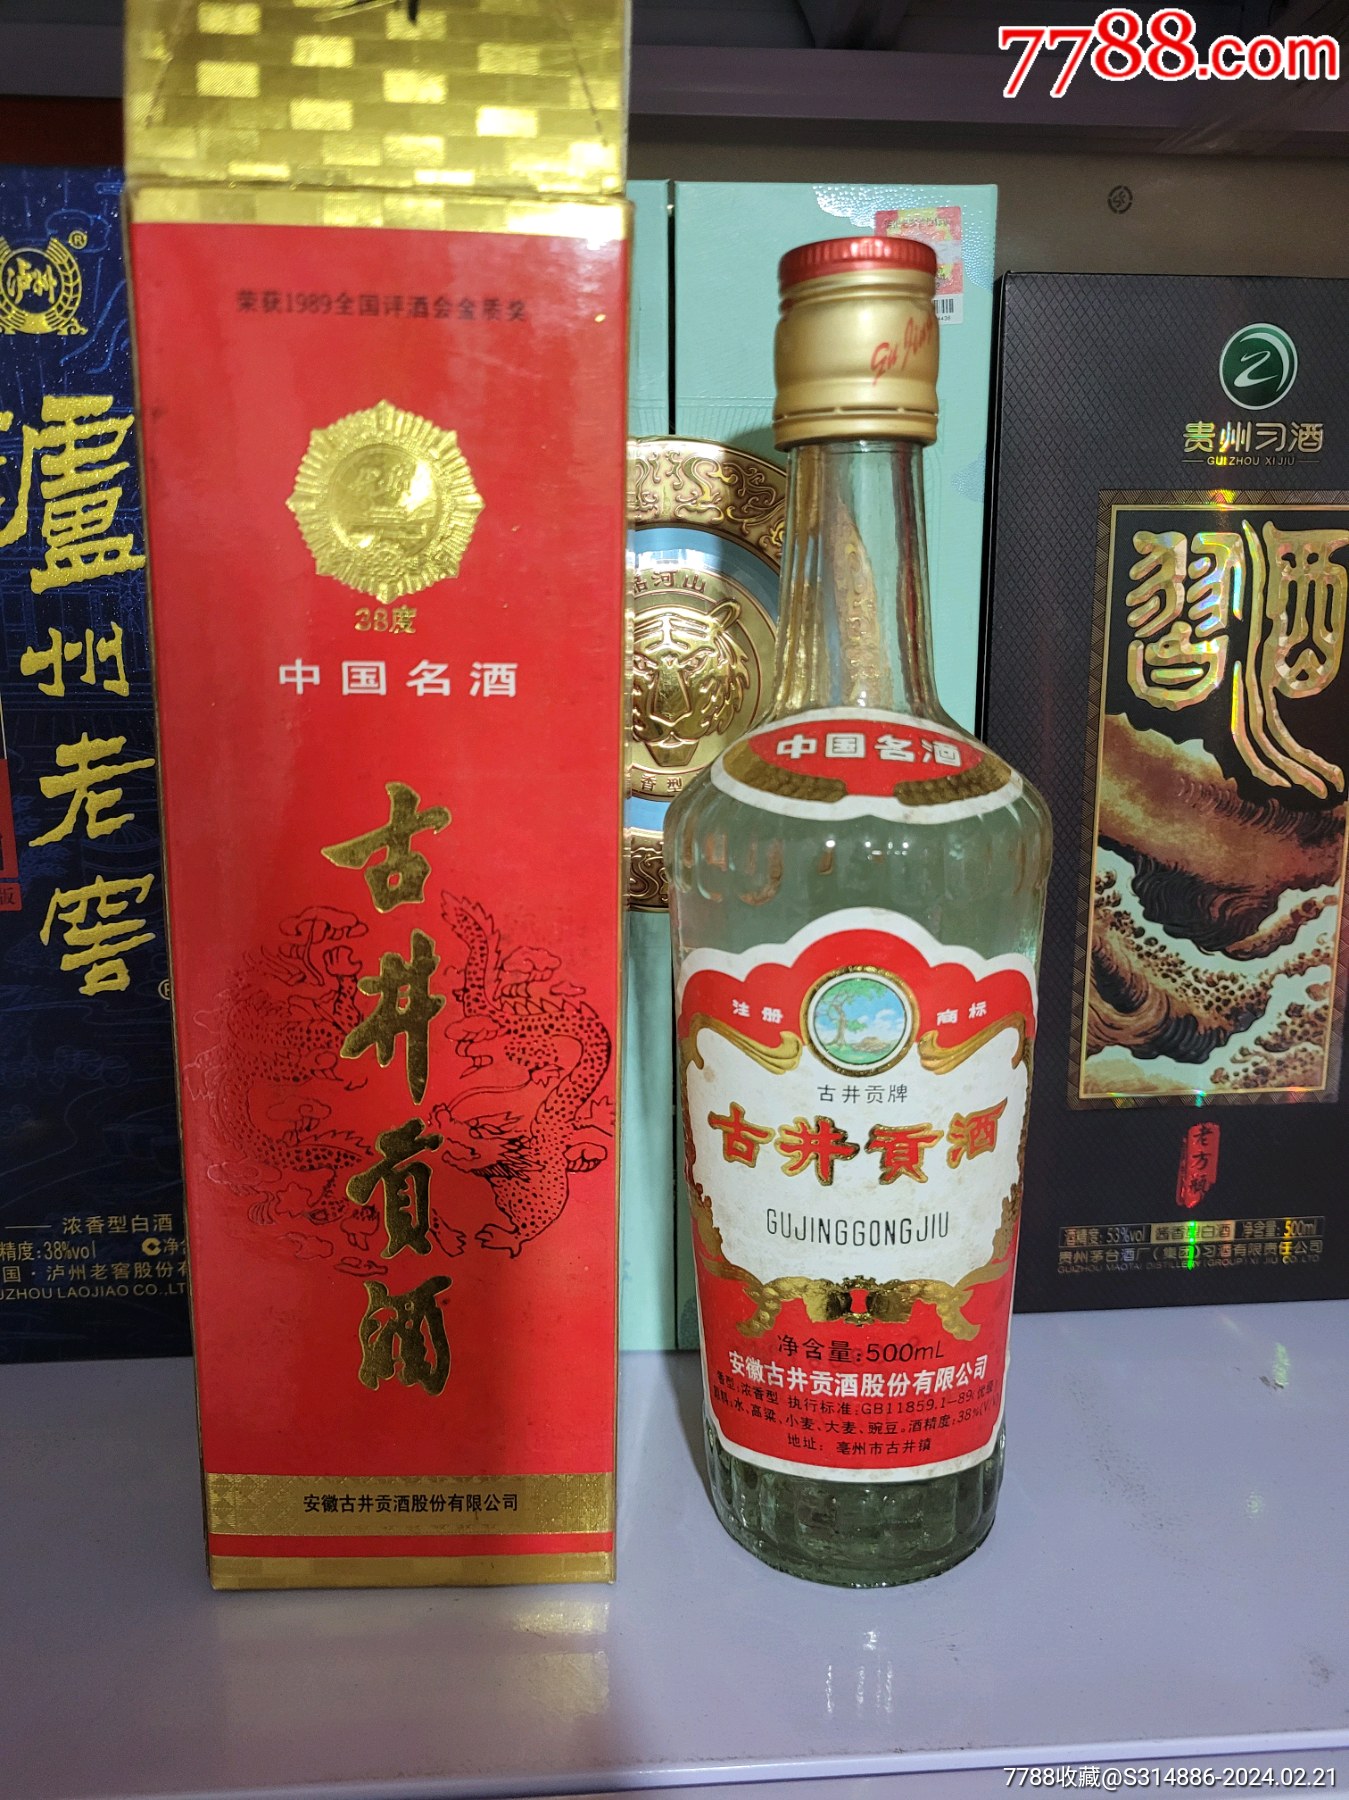 古井贡酒价格表 官方图片